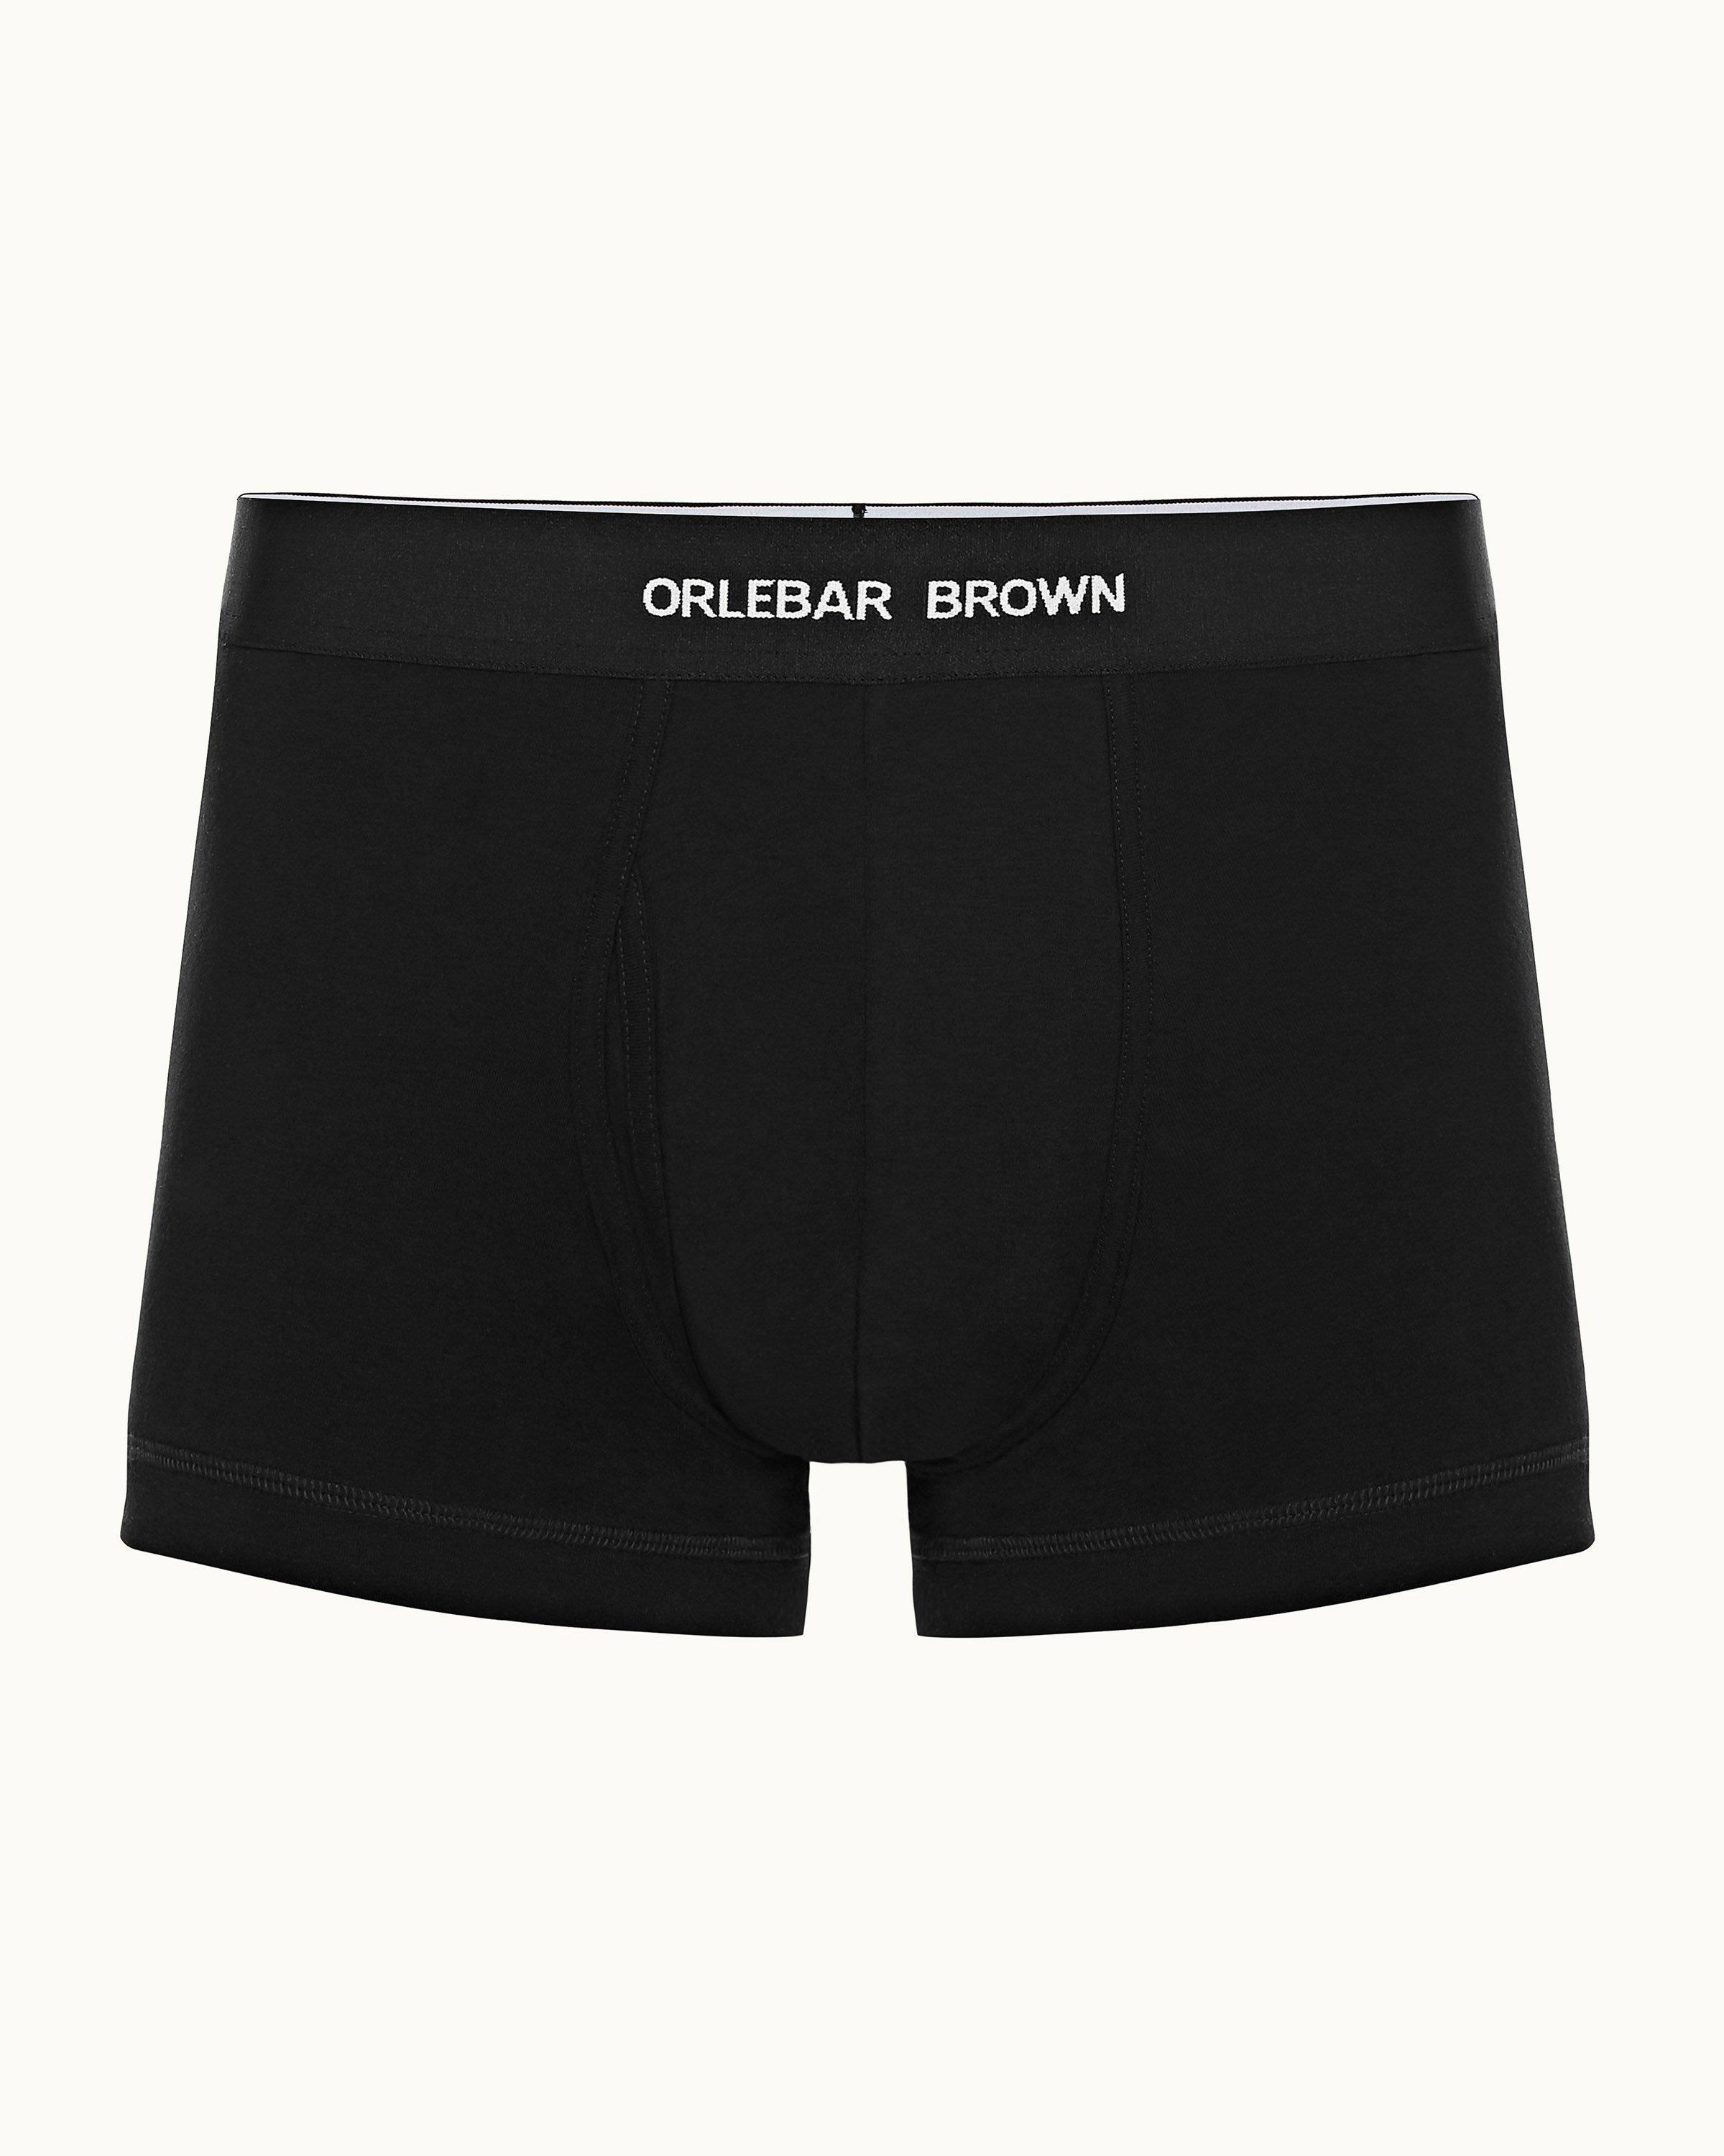 Shortie Underwear - Black, Pale, Tan